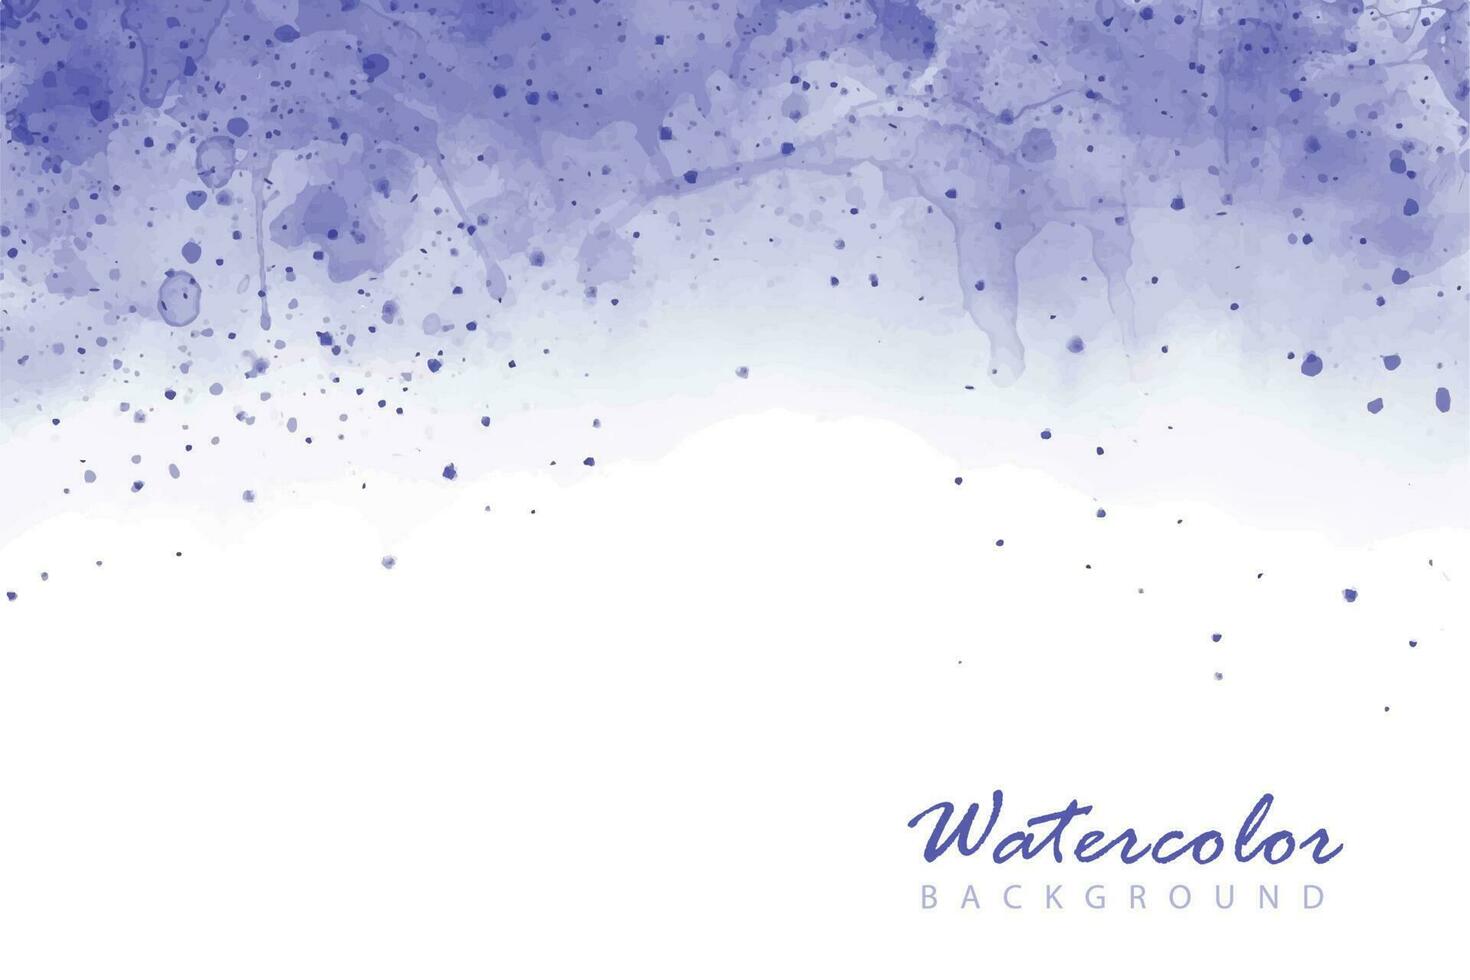 artistiek, abstract blauw, indigo, paars waterverf achtergrond met spatten met de nevel mist effect vector